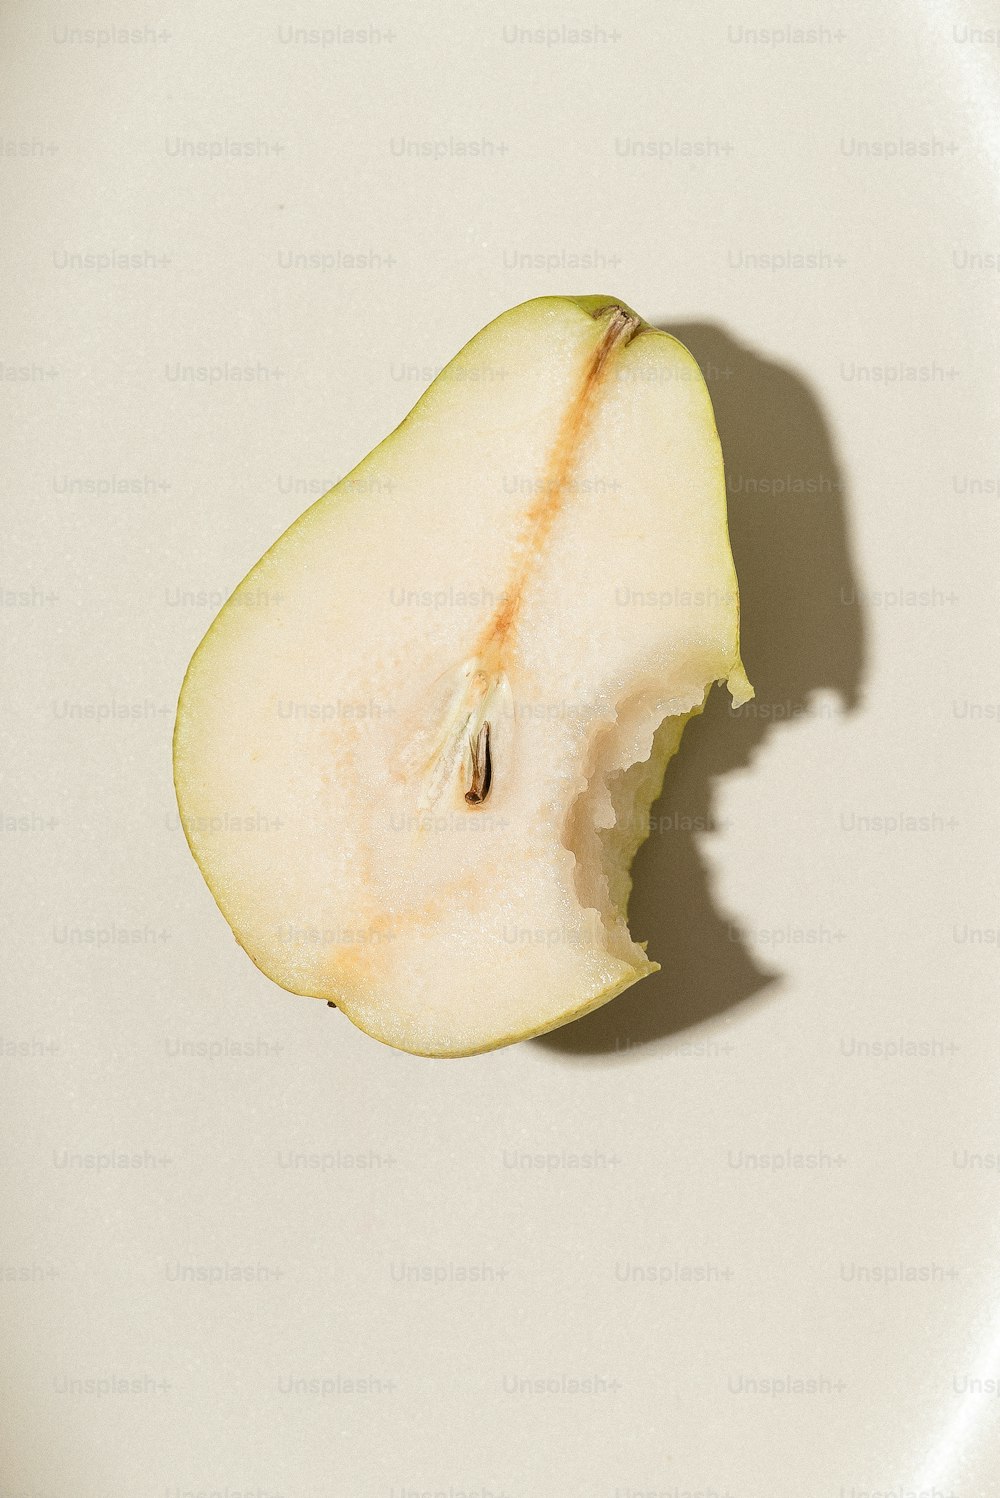 une pomme à moitié mangée assise sur une assiette blanche